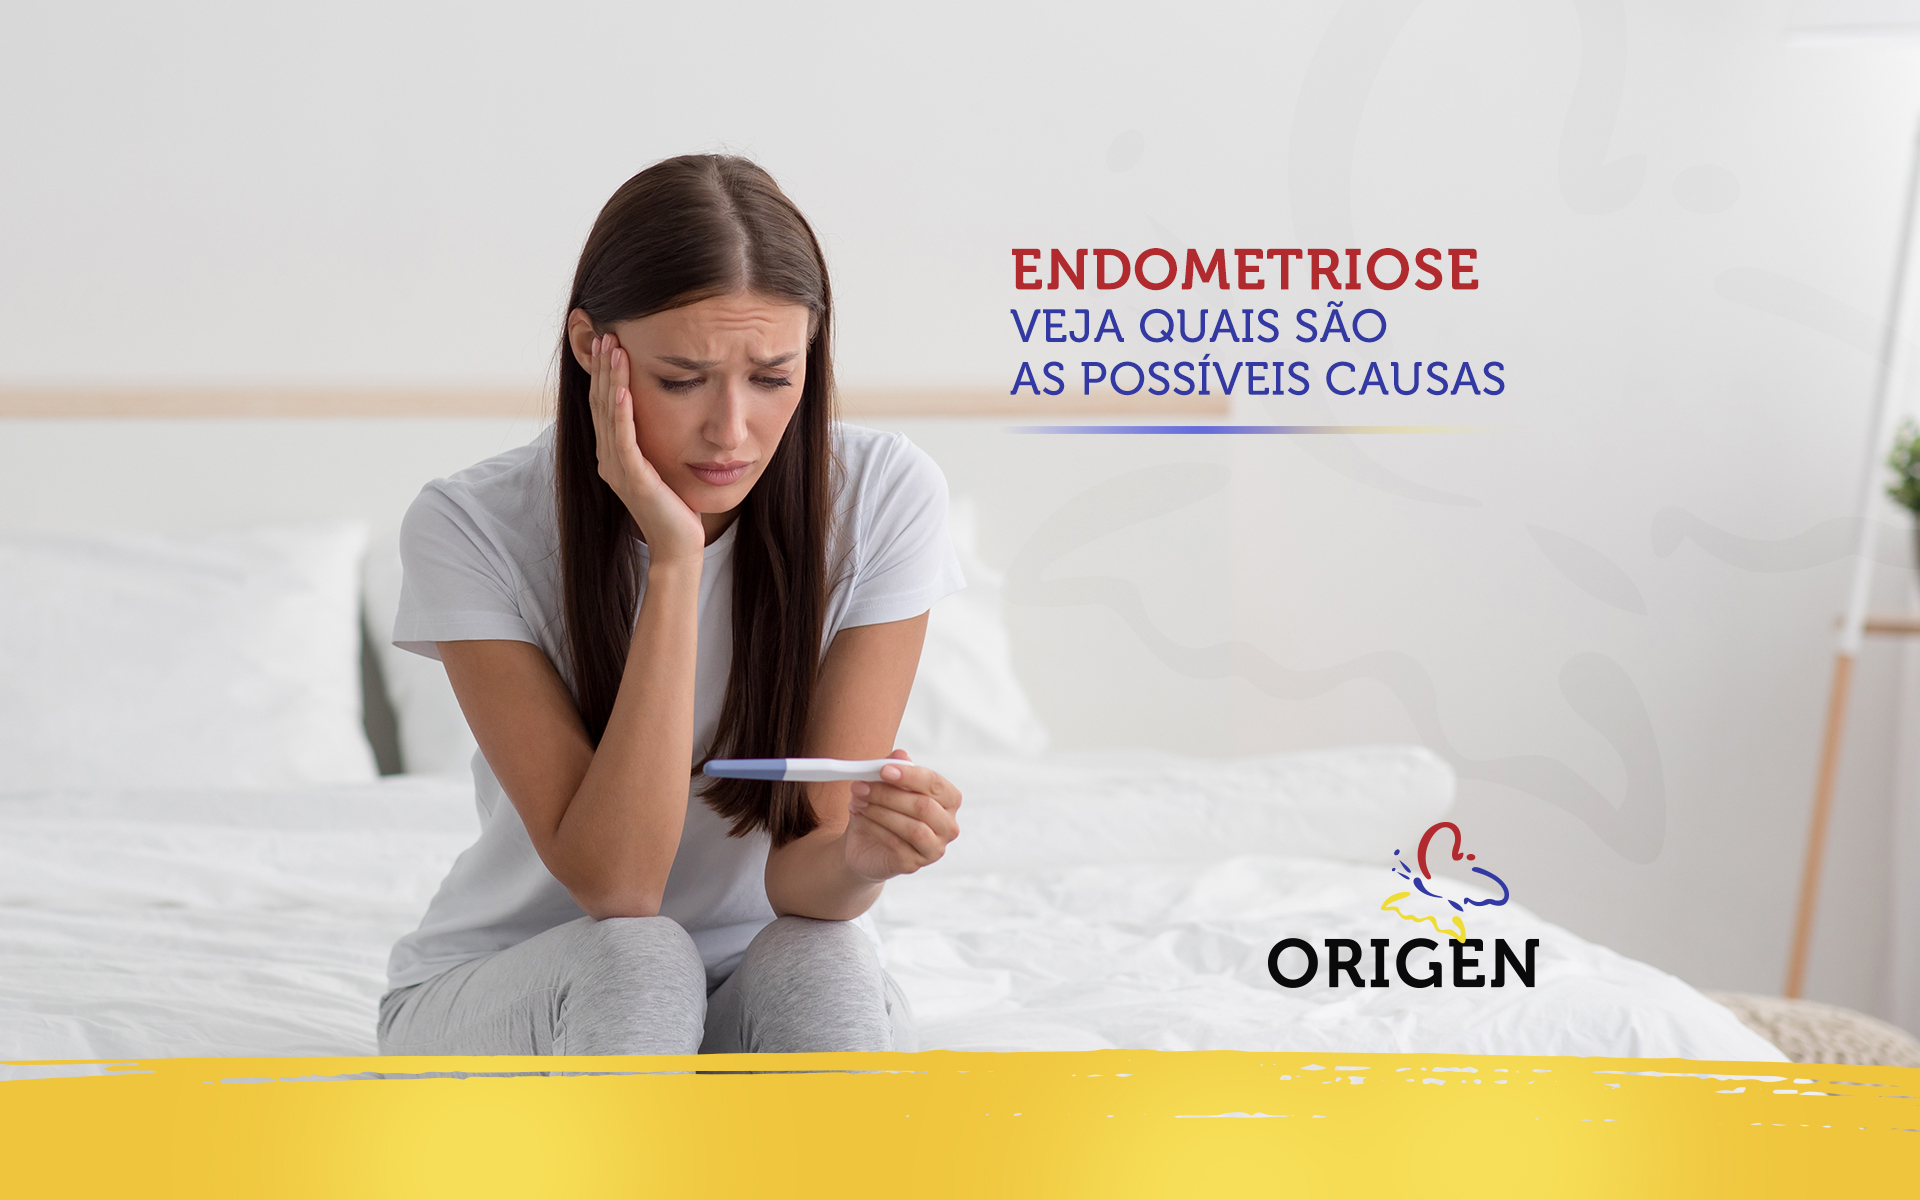 Endometriose: veja quais são as possíveis causas